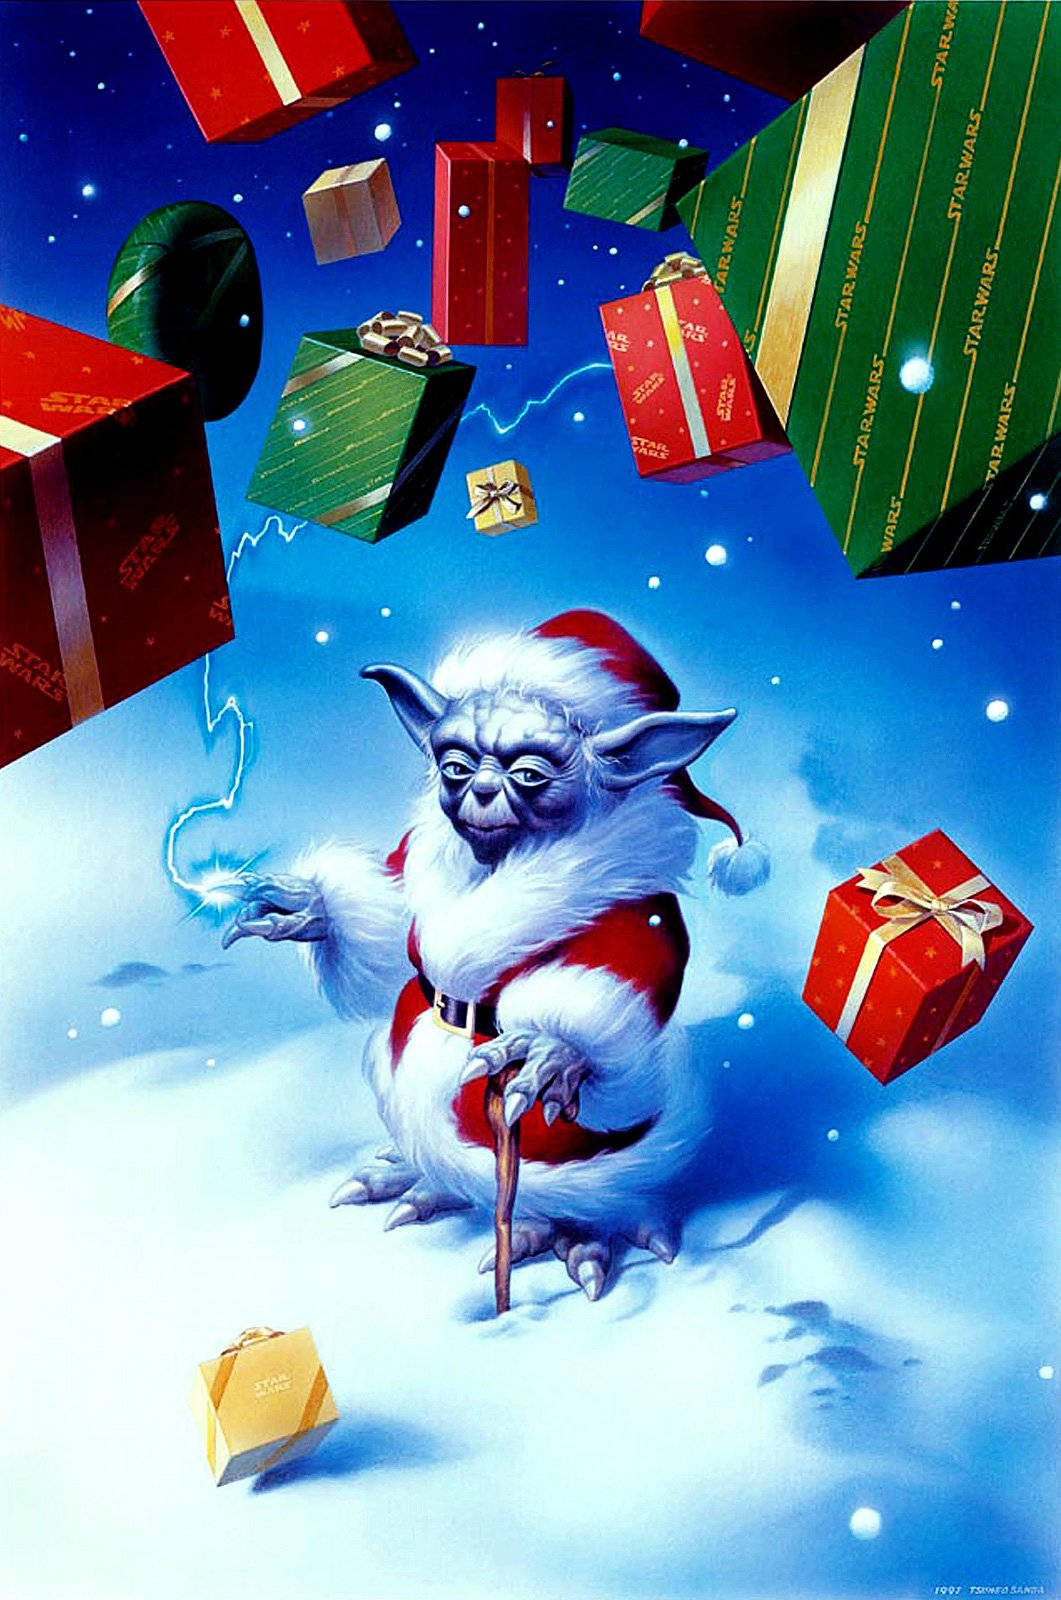 Bildfeiere Die Weihnachtsfeiertage Mit Der Star Wars Geschichte. Wallpaper